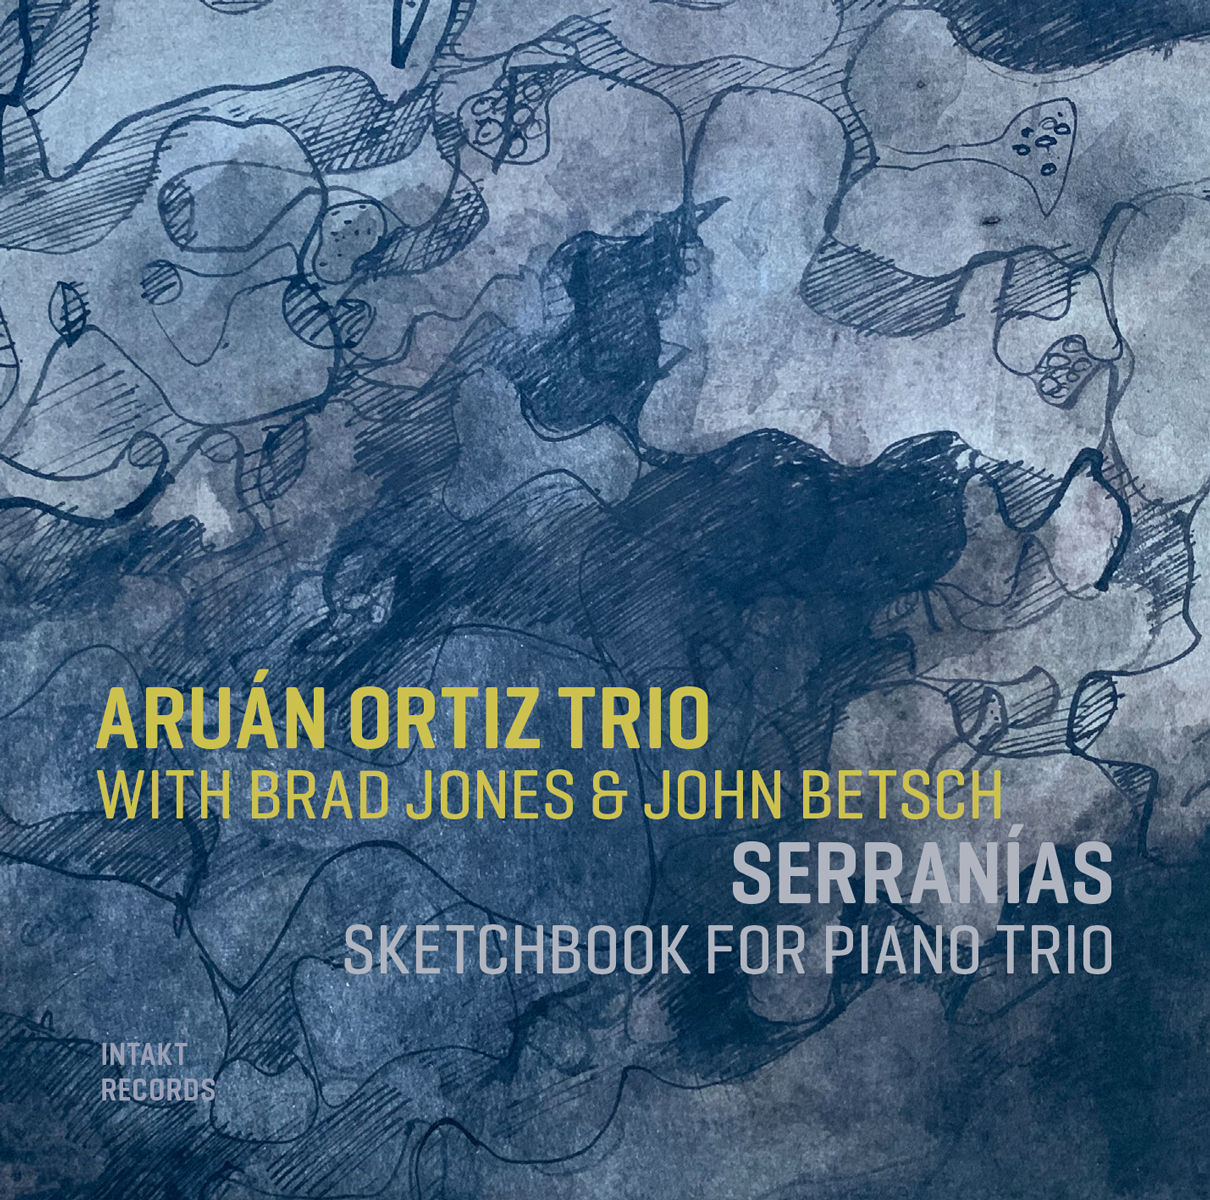 ARUÁN ORTIZ TRIO
WITH BRAD JONES & JOHN BETSCH
SERRANÍAS
SKETCHBOOK FOR PIANO TRIO
Intakt Records CD 392